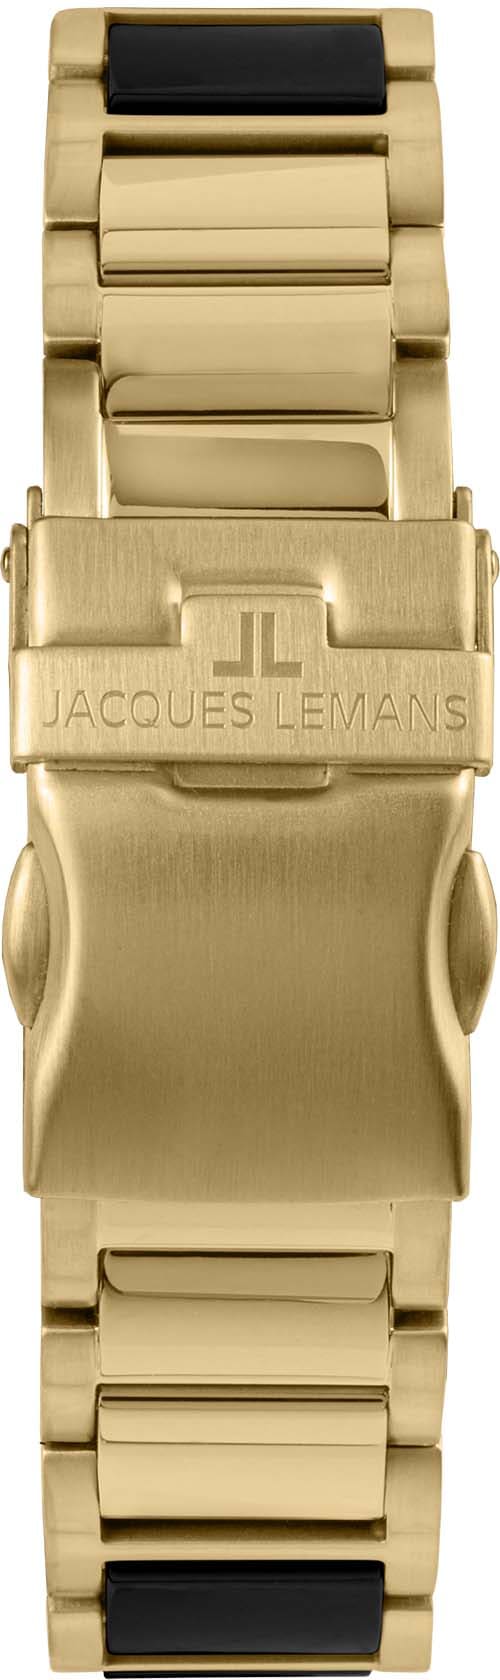 42-10G« Keramikuhr Jacques Lemans »Liverpool